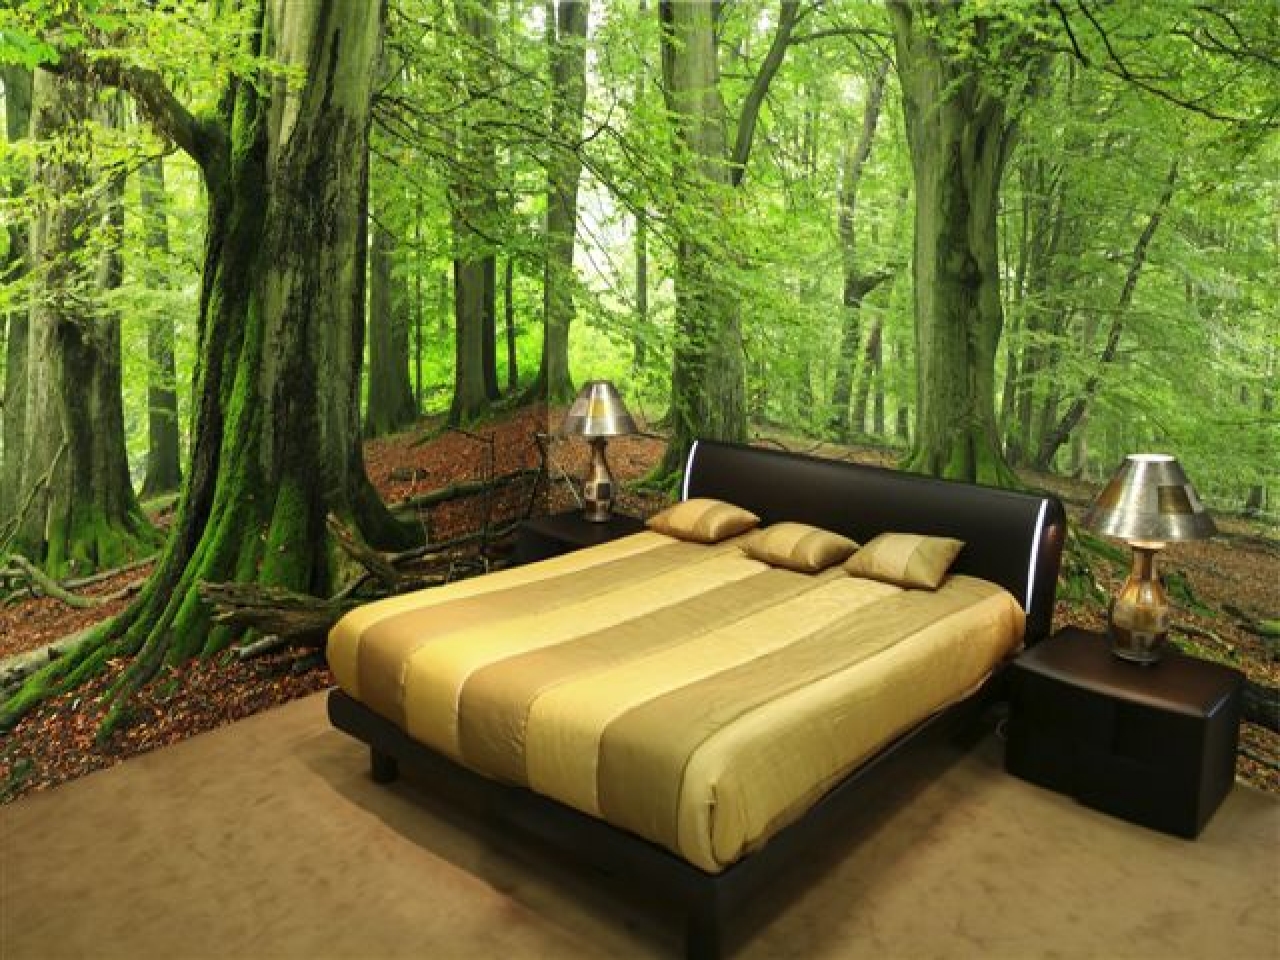 Обои на стену лес. Фотообои в спальню. Фотообои 3д. Красивые фотообои в спальню. Комната в стиле природы.